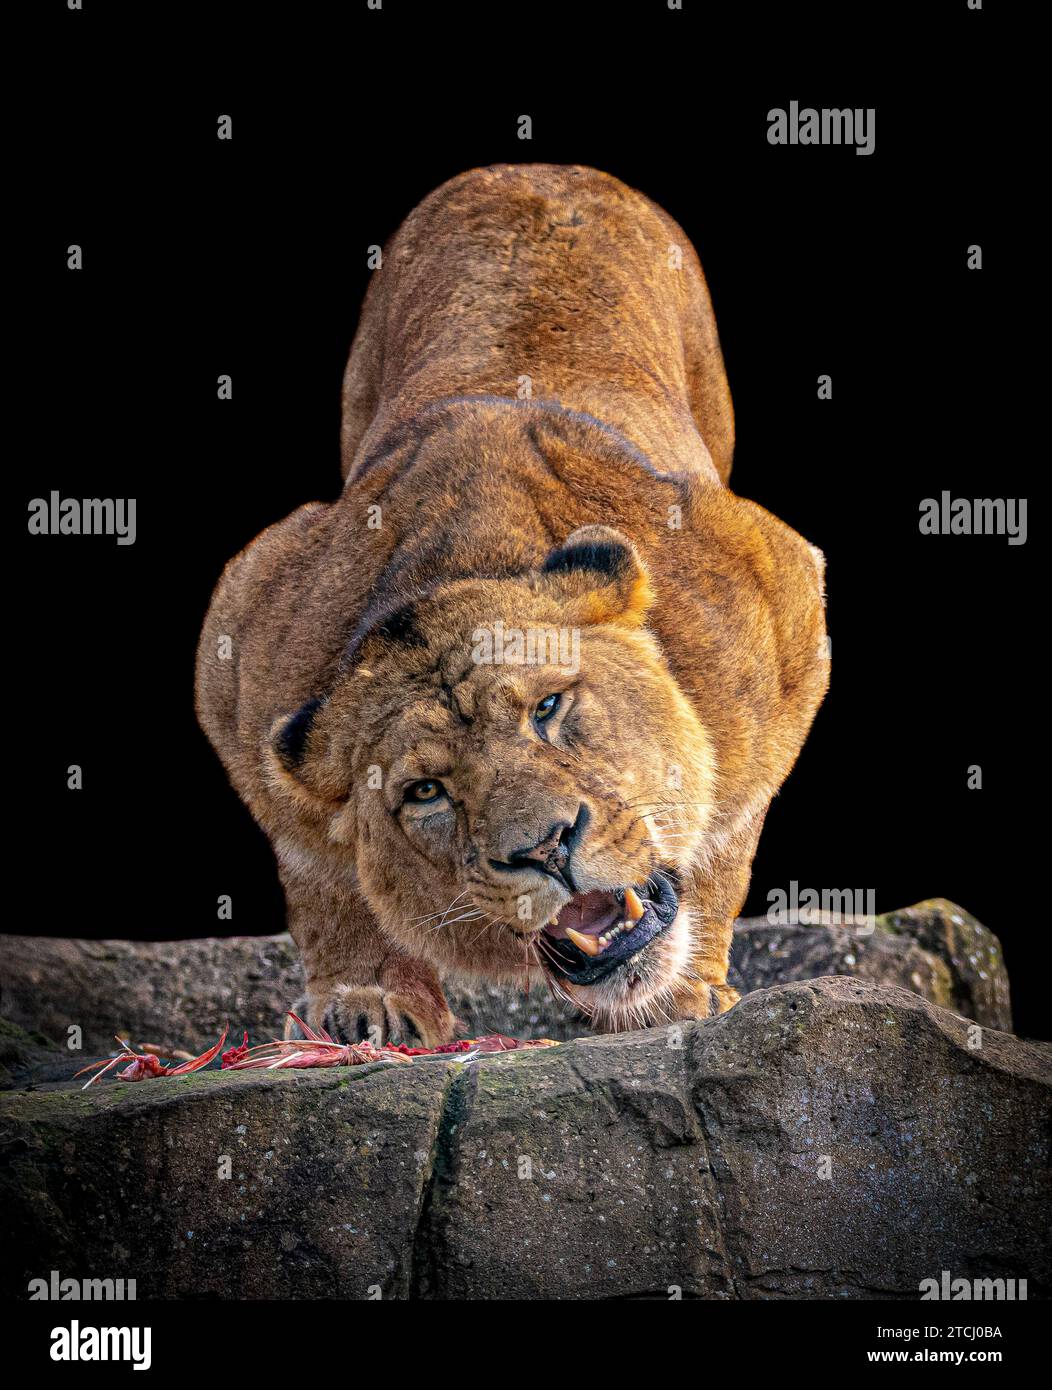 Khari se bat devant les photographes BLACKPOOL ZOO, ANGLETERRE DES IMAGES ÉTONNANTES montrent un lion regardant le photographe alors qu'il est en train de festoyer - Just li Banque D'Images